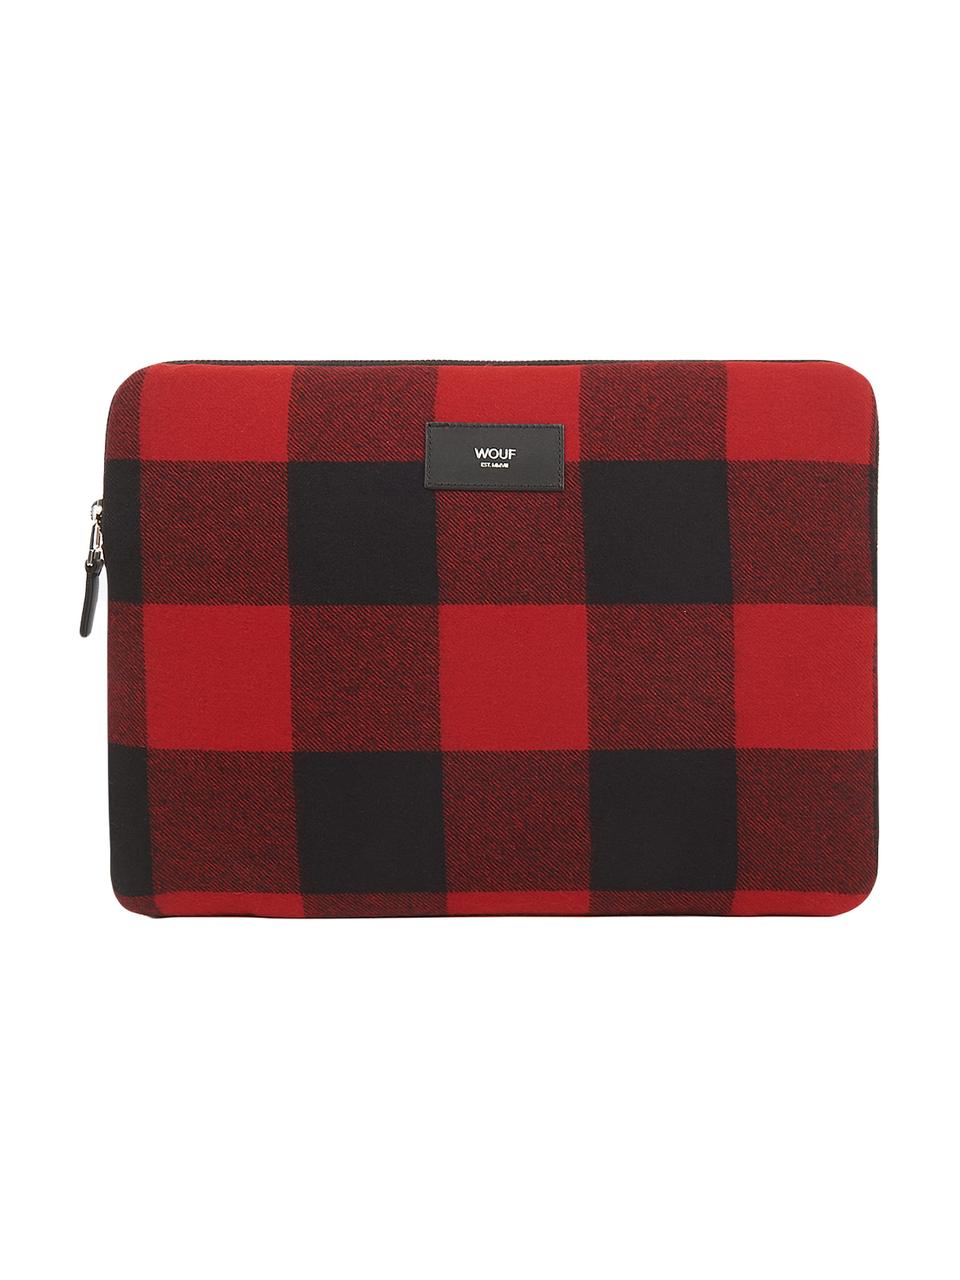 Laptophülle Red Jack für MacBook Pro 13 Zoll, Baumwolle, Leder, Rot, Schwarz, 33 x 23 cm